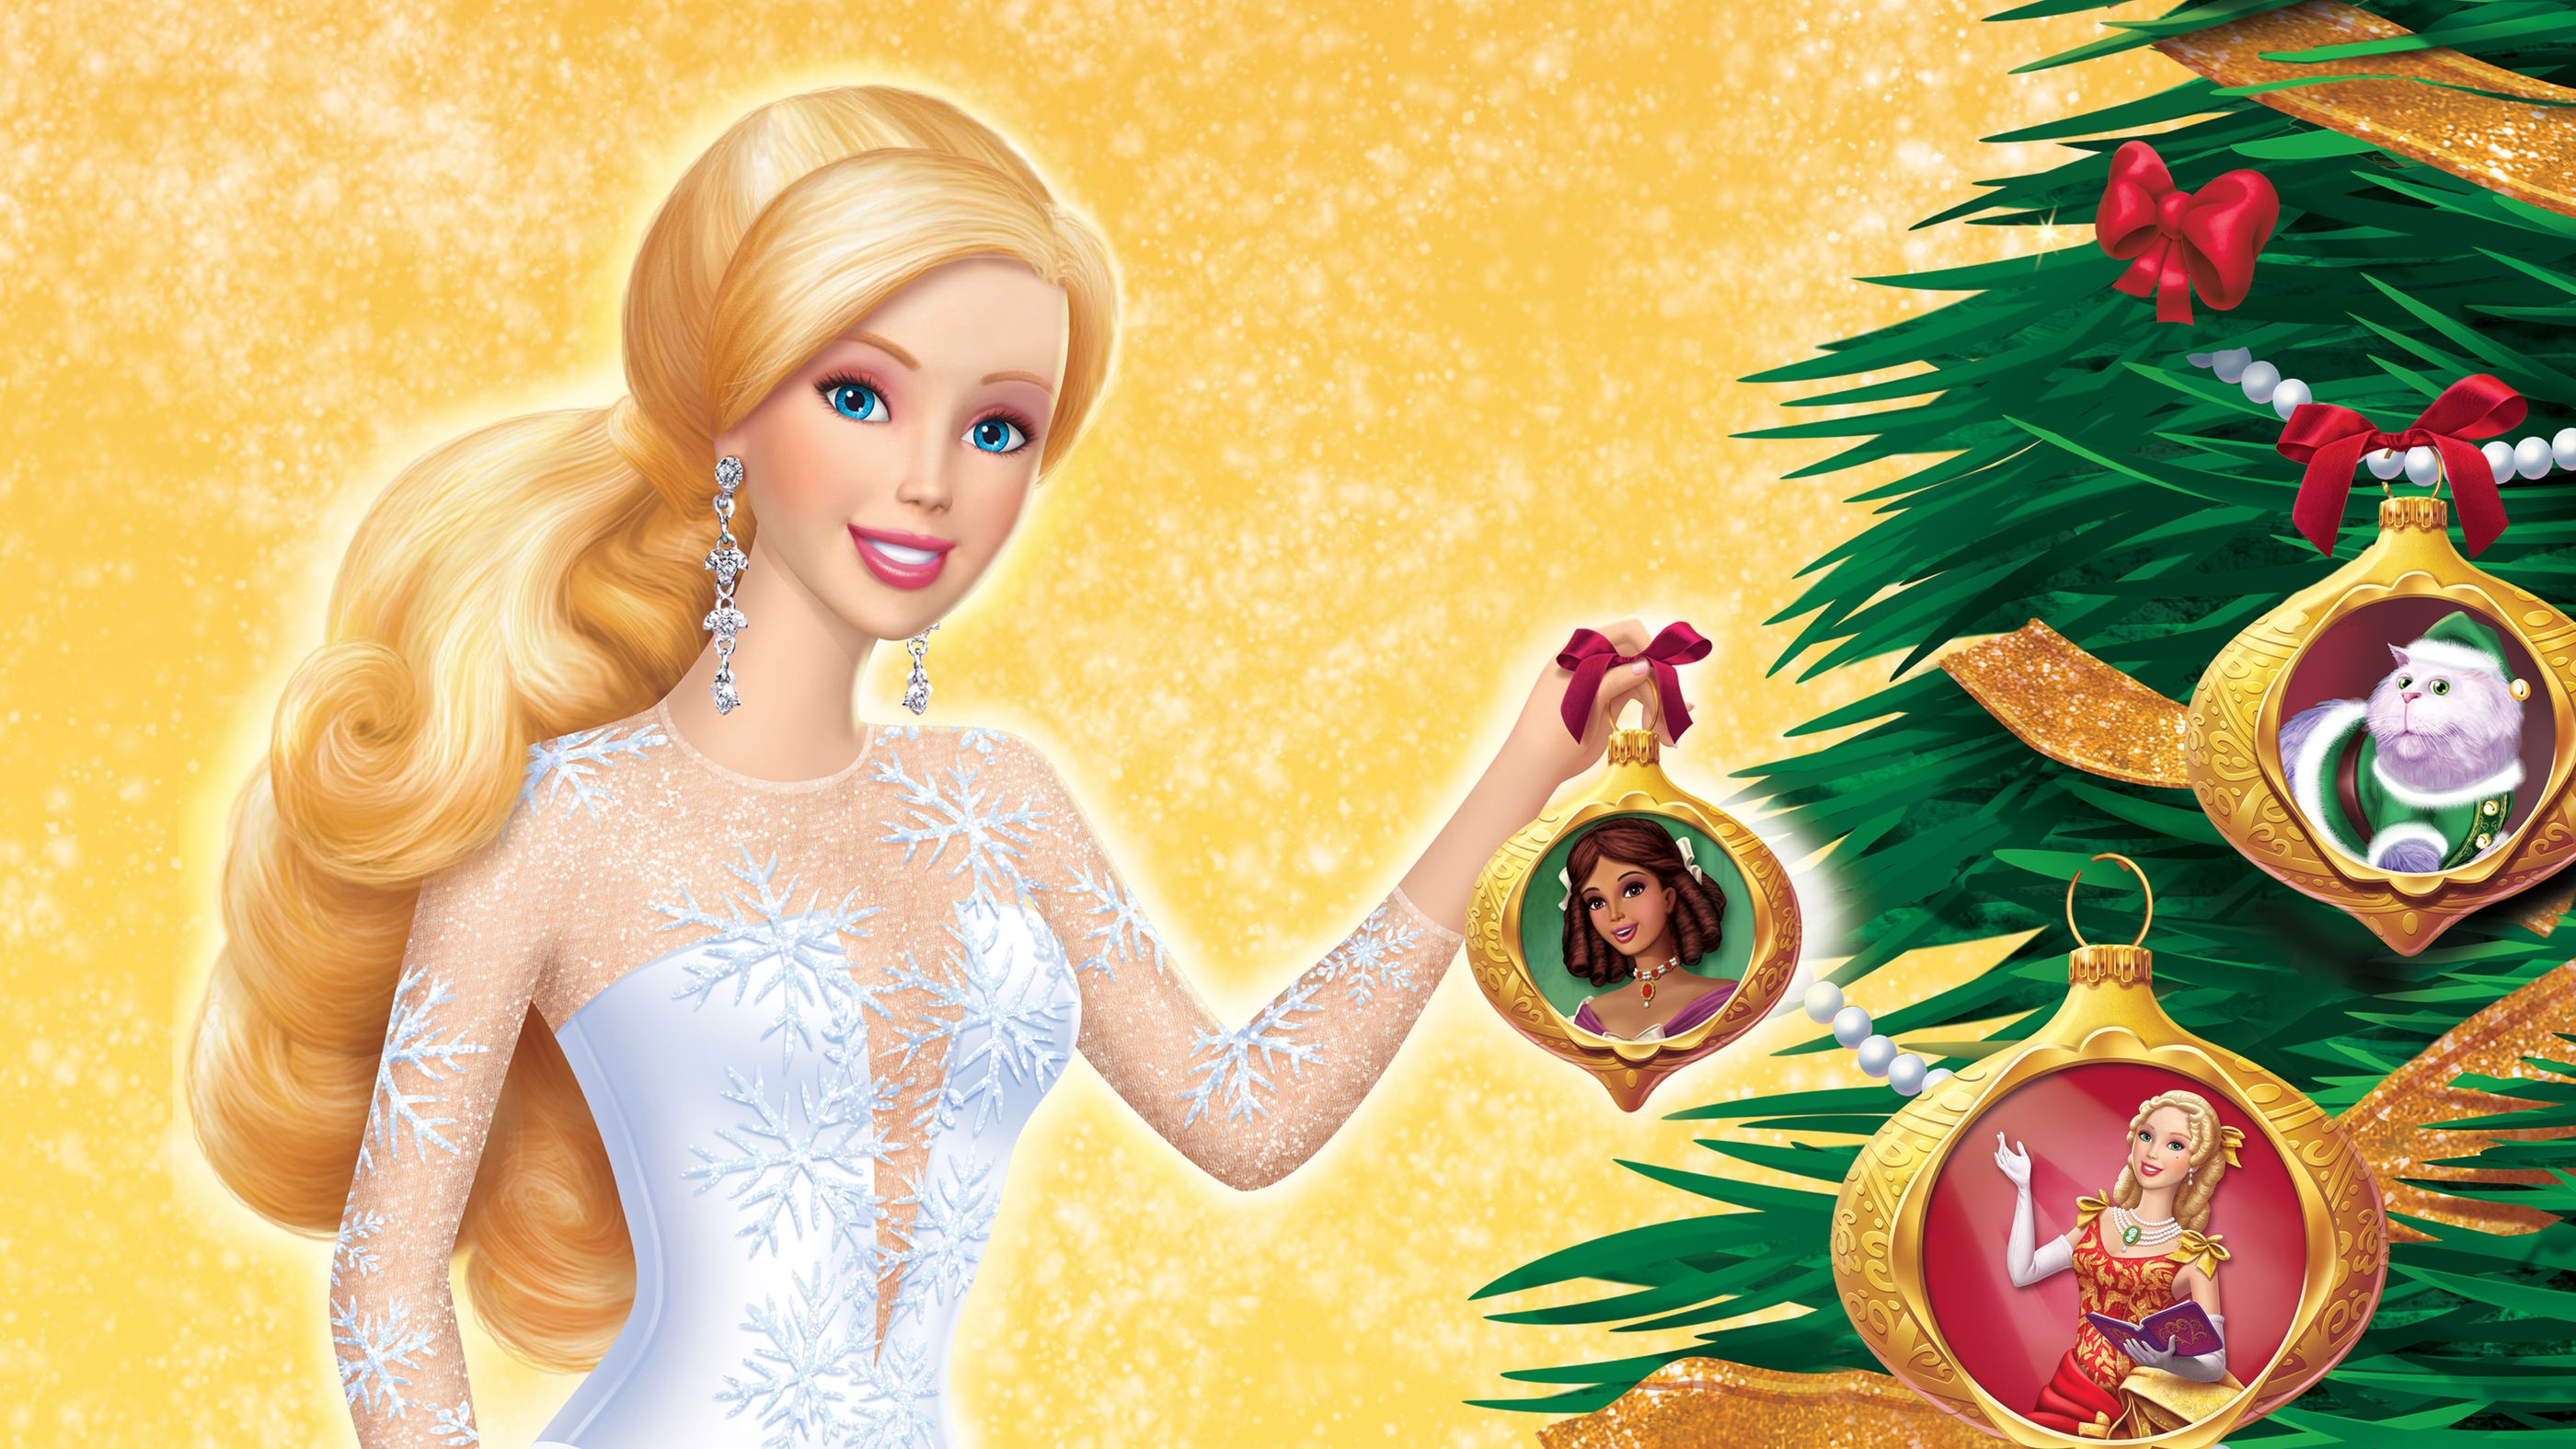 Celsius Foglalat Elcsor Barbie In A Christmas Carol Full Movie Redskinstweetteam Org